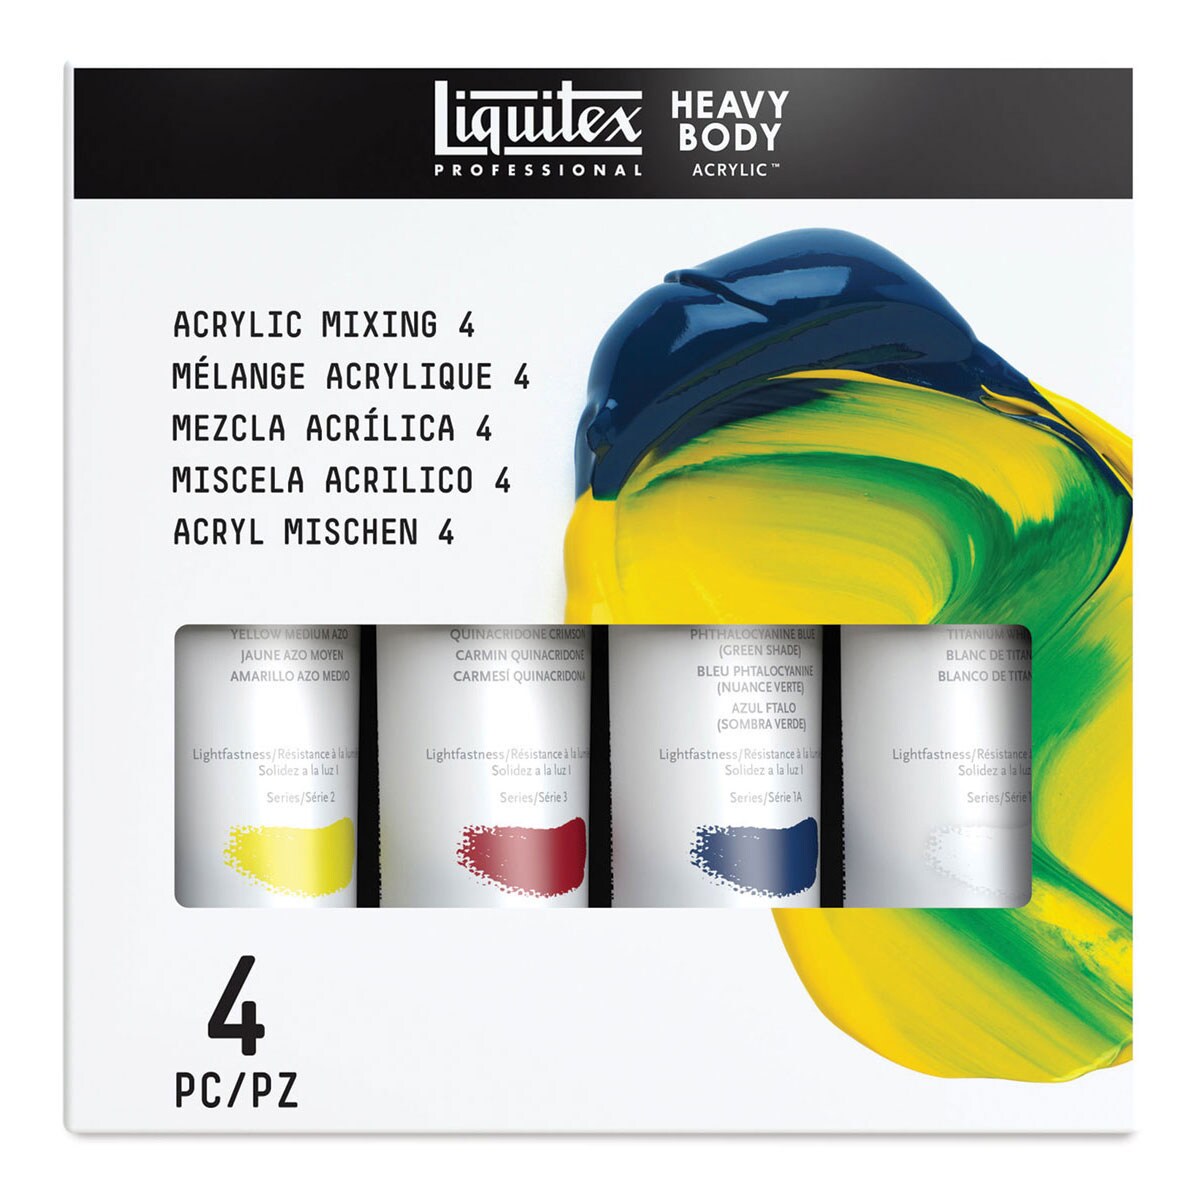 Liquitex Heavy Body Acrylic (2 oz Tube)